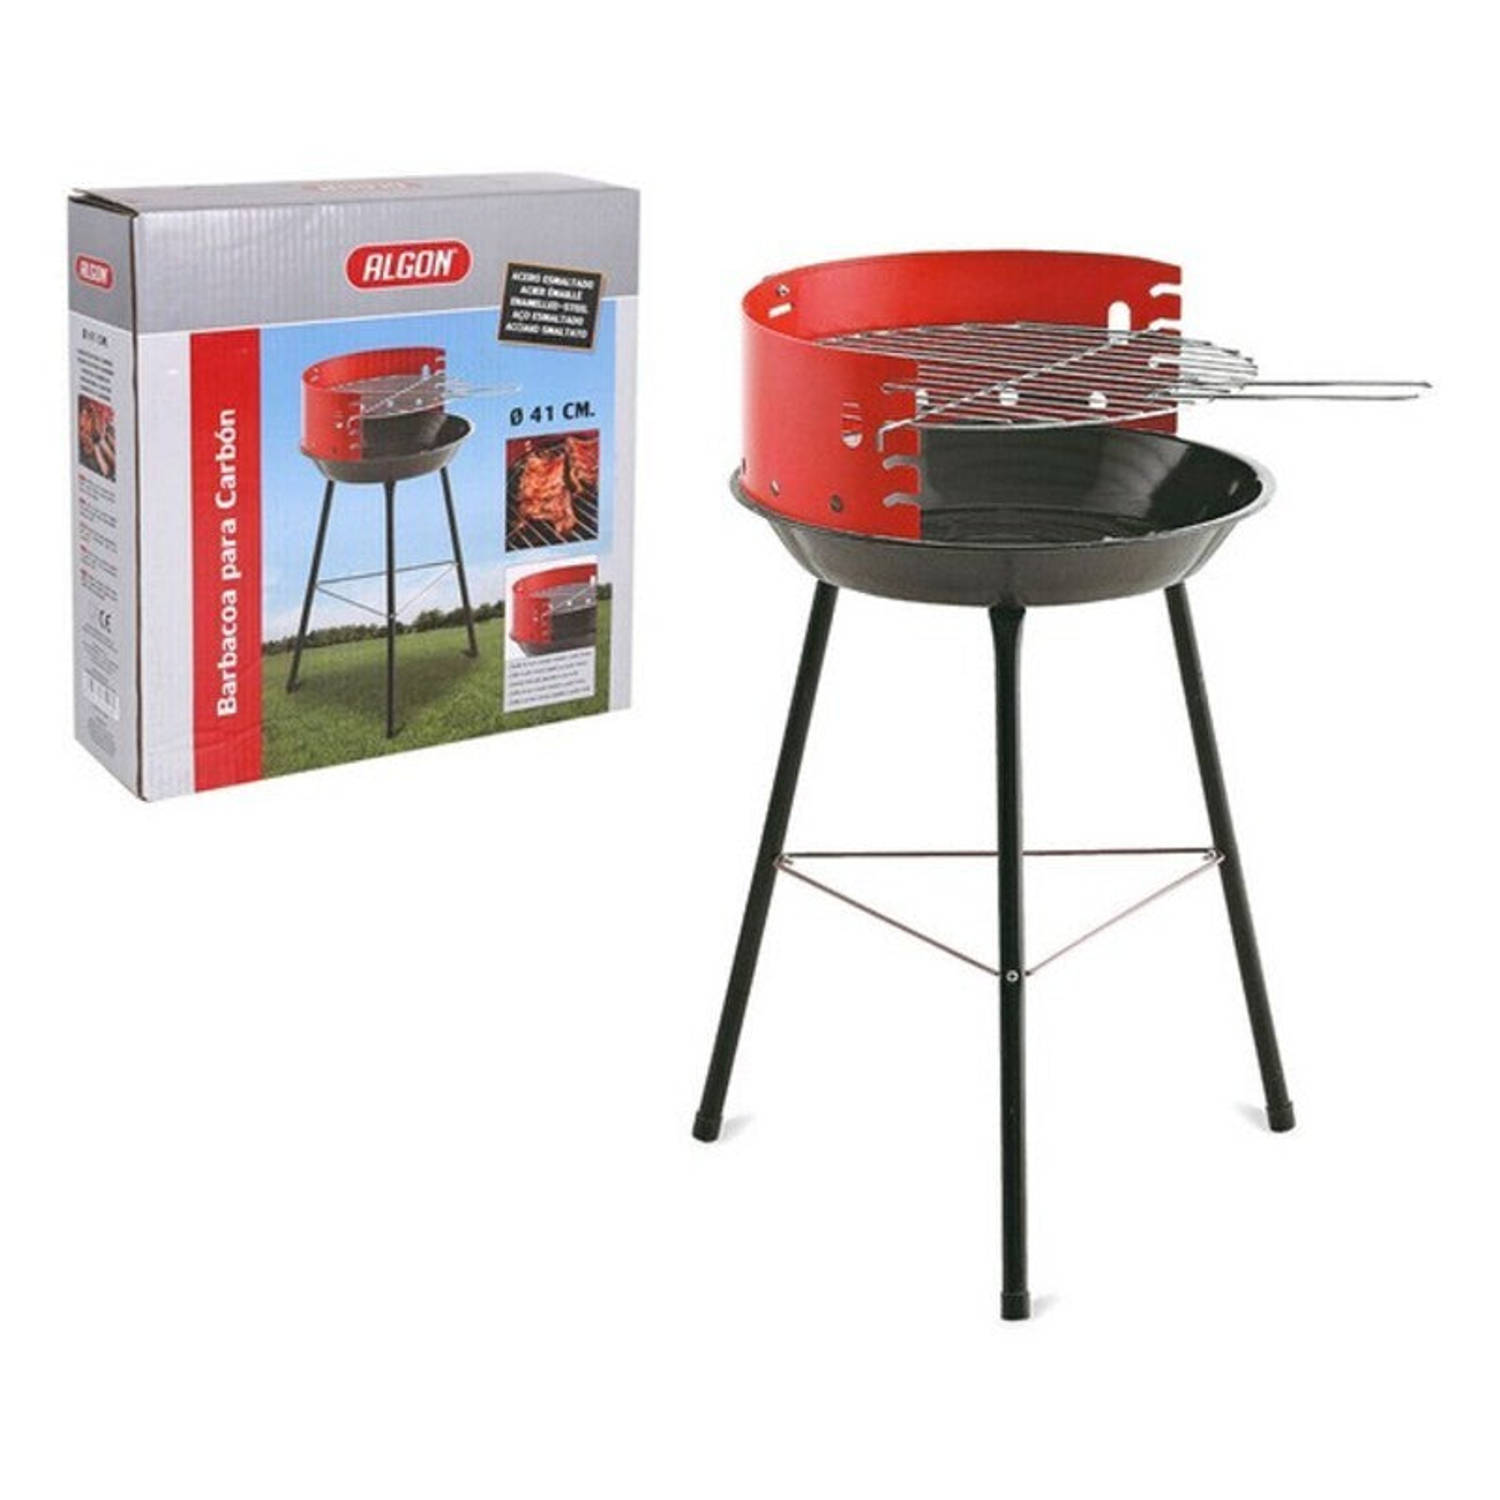 Houtskoolbarbecue met Poten Algon Rond Rood Zwart (ø 41 cm)